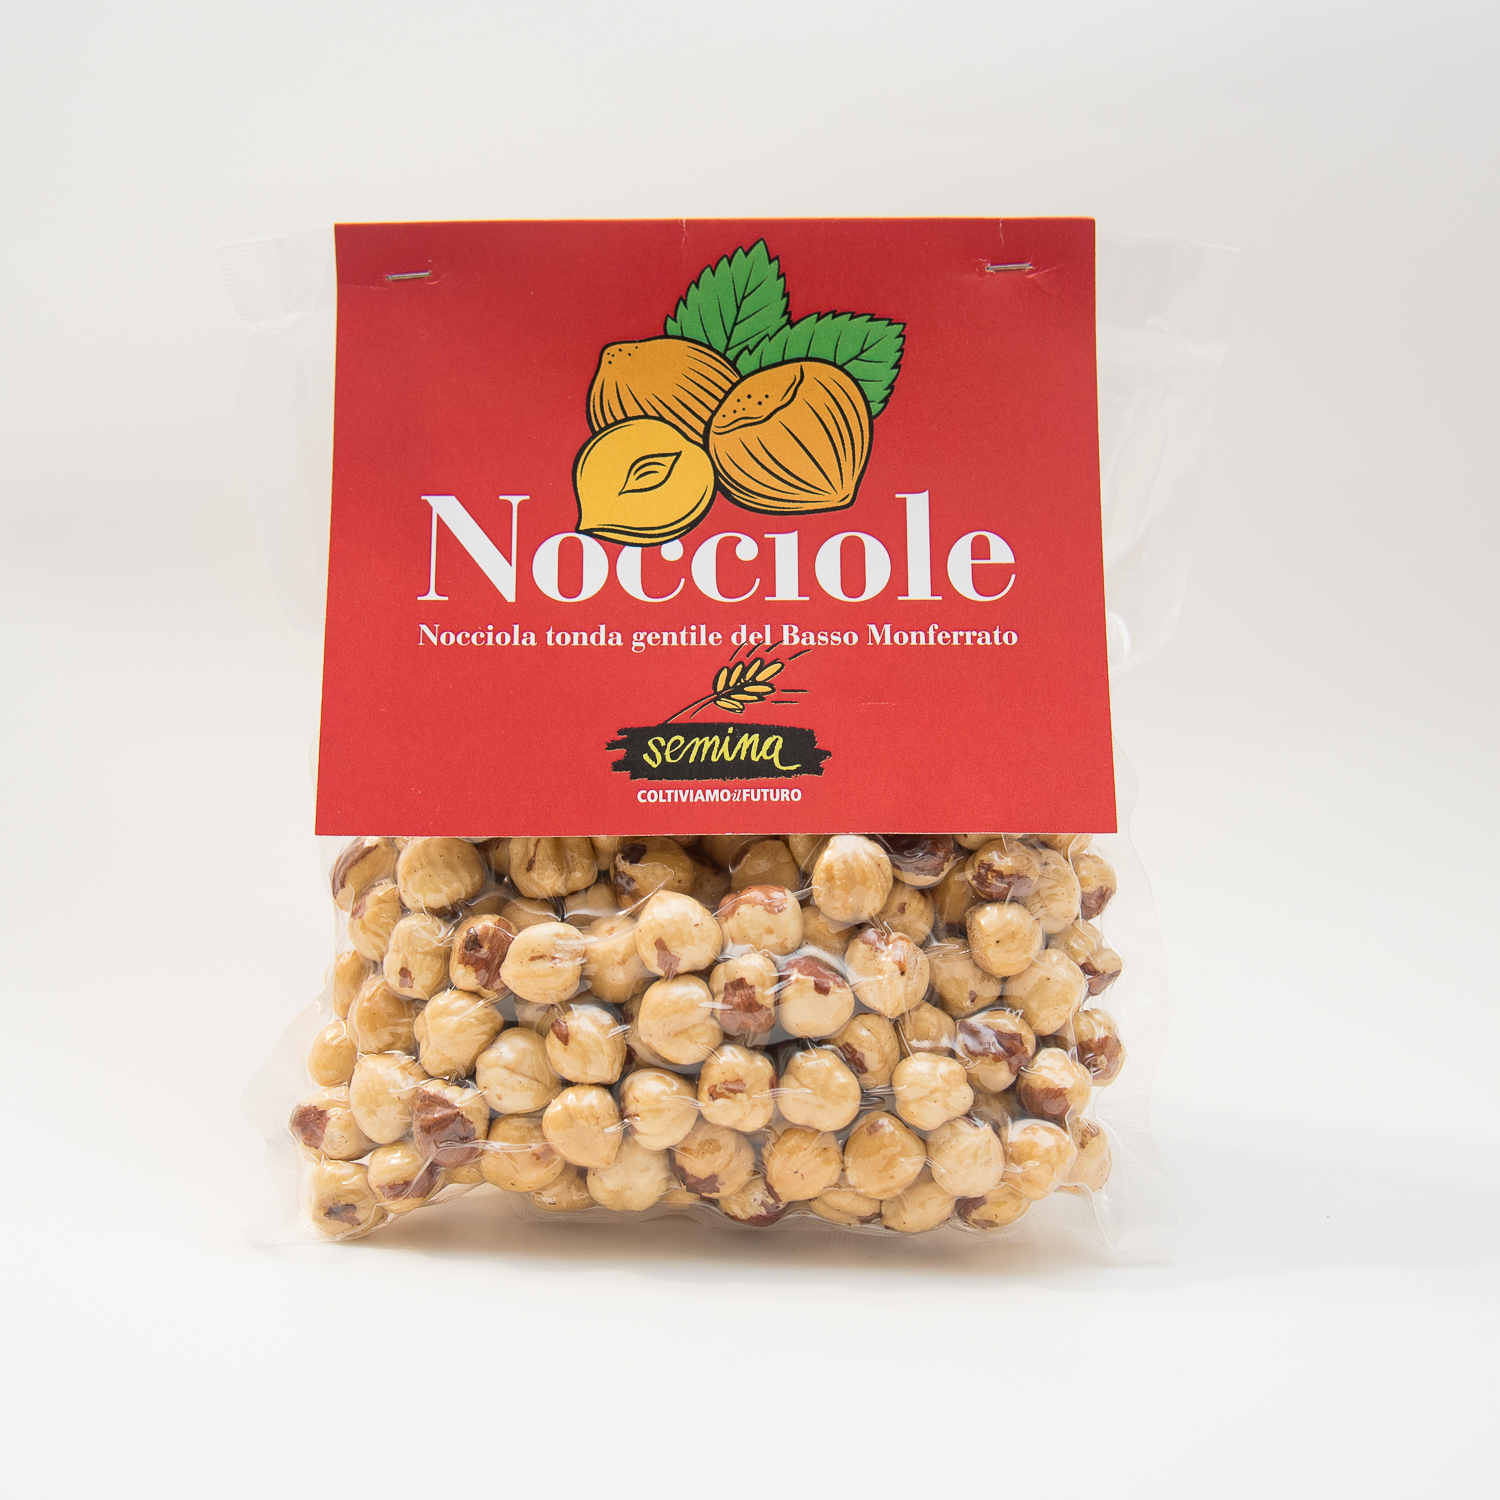 NOCCOLE. Presso Cascina Abele, la prima comunità aperta dal Gruppo Abele nel 1973, si trova un noccioleto che produce frutti della pregiata varietà tonda gentile. Nocciole tostate intere (confezione da 200 gr). 